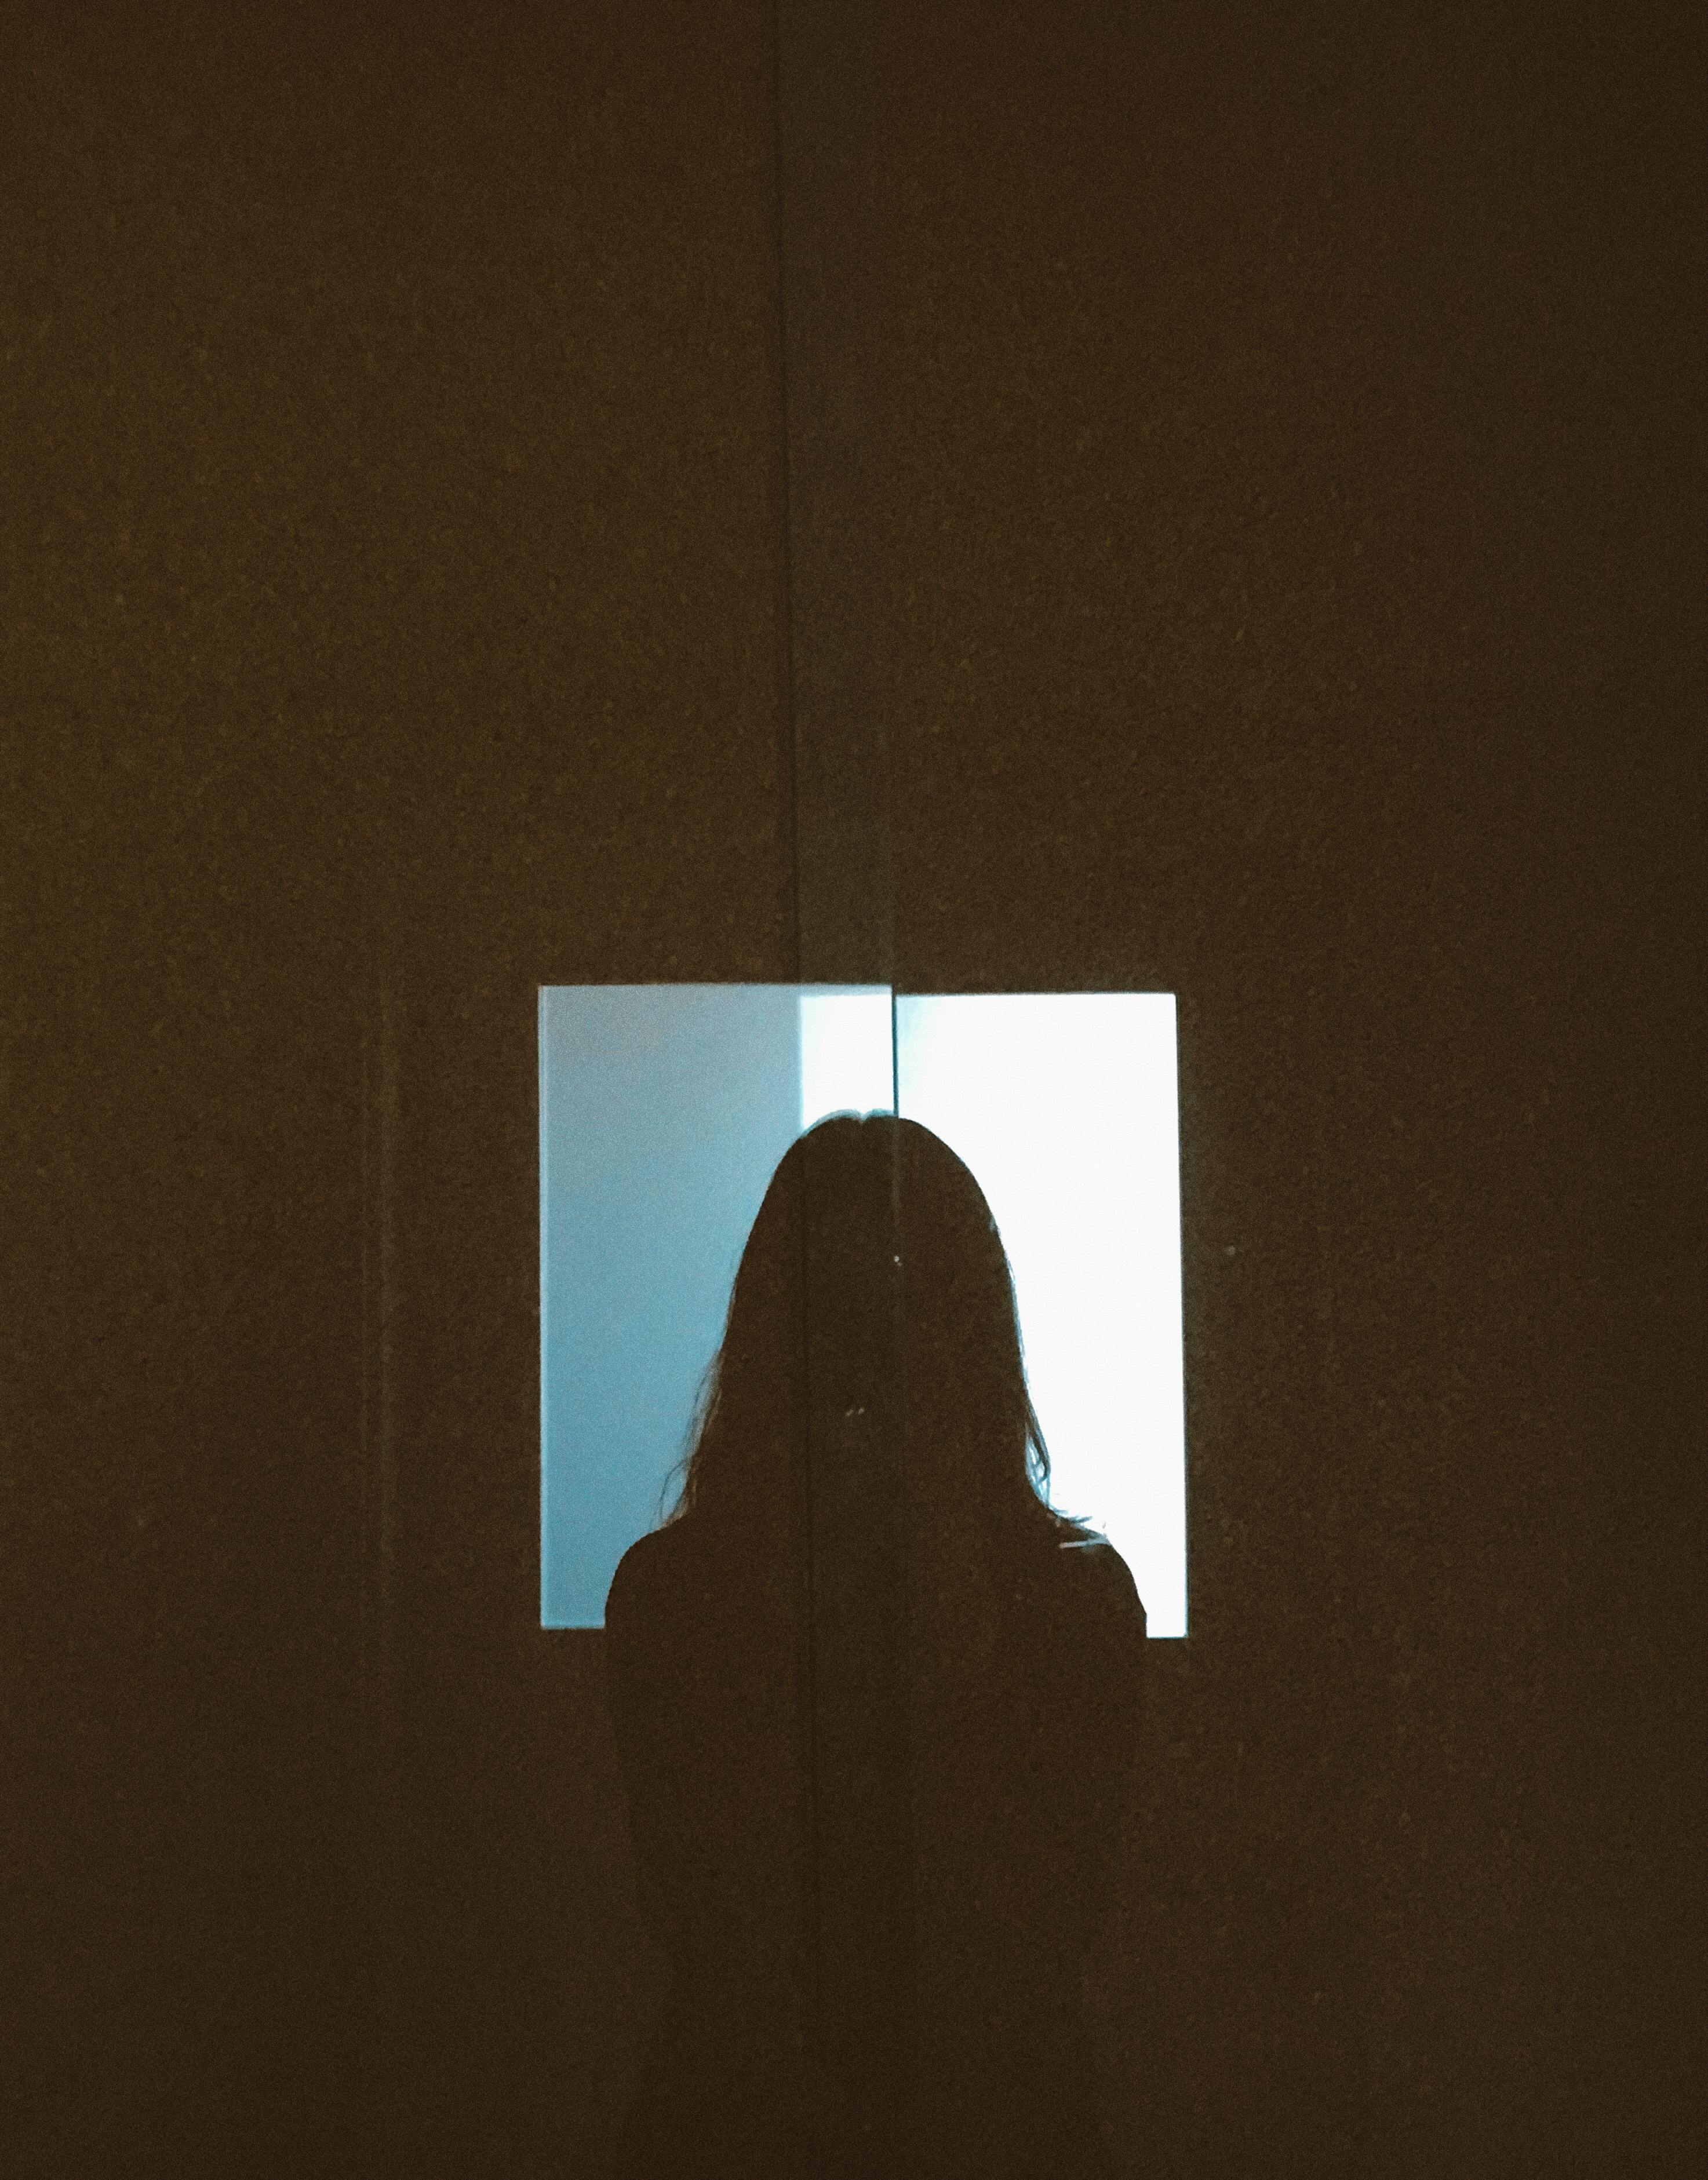 Silueta de una persona | Foto: Pexels